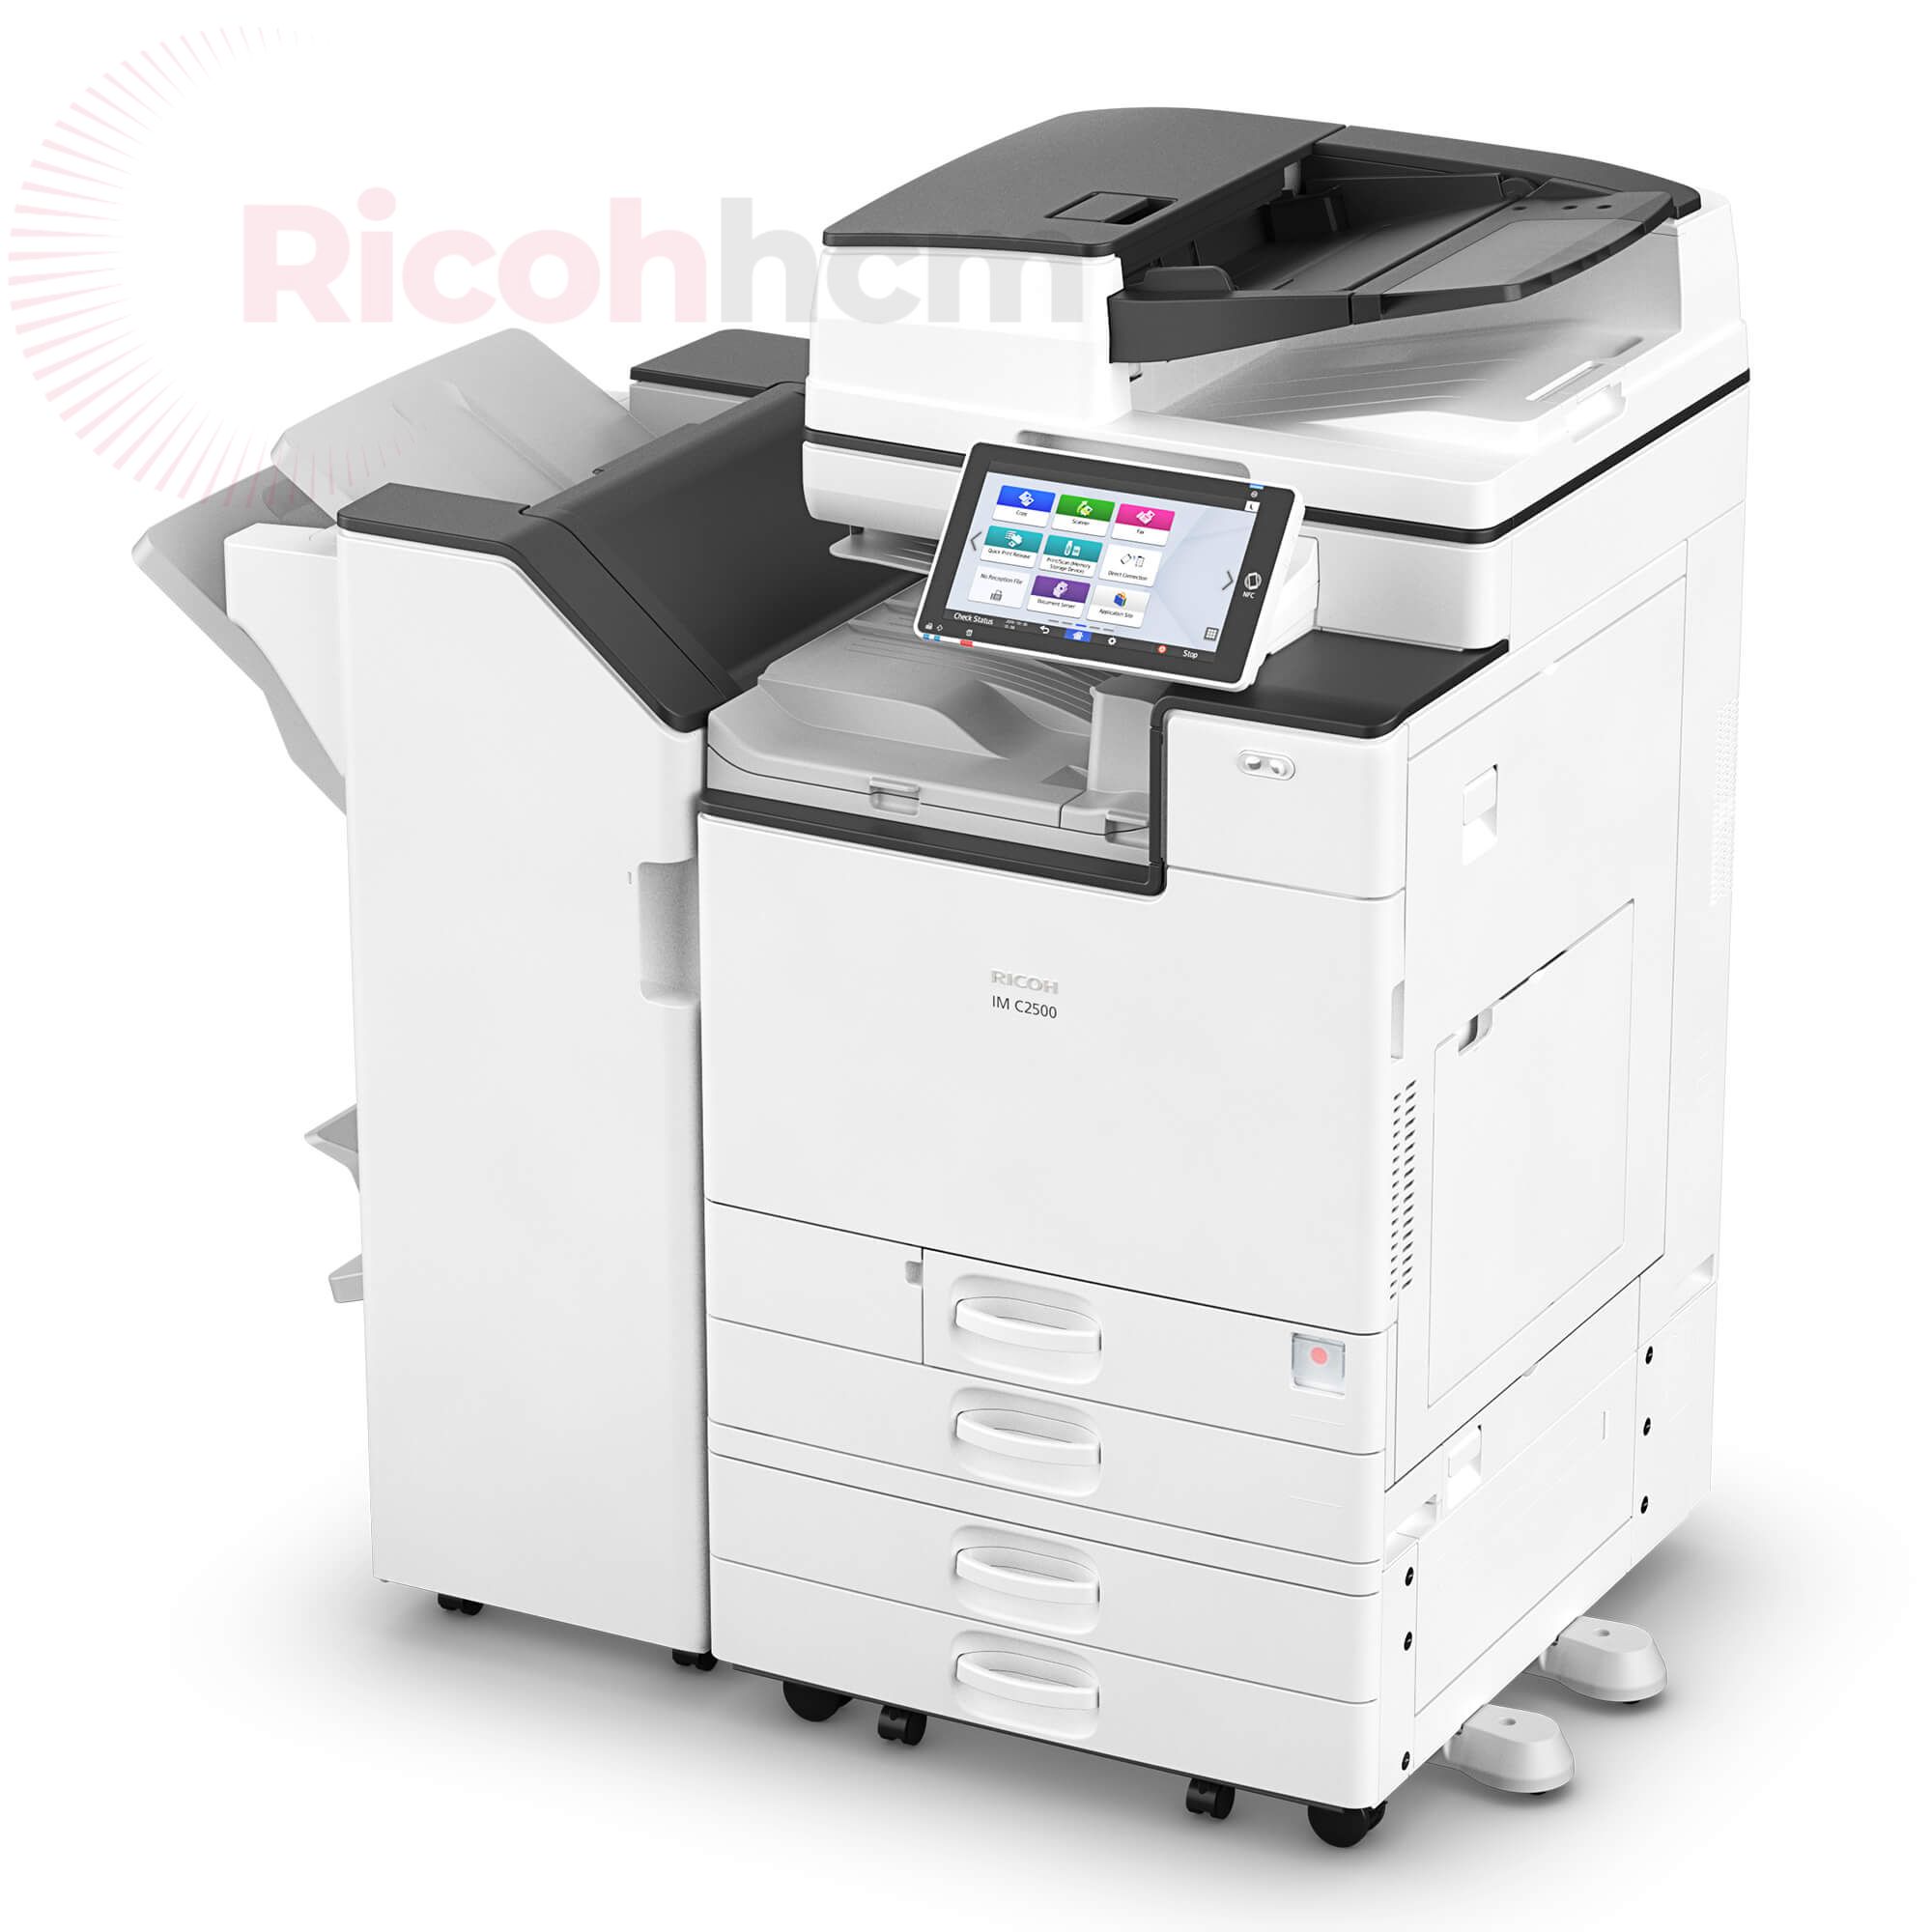 RICOHHCM - địa chỉ bán máy photocopy huyện Vĩnh Cửu mang đến dịch vụ chuyên nghiệp với nhiều ưu điểm